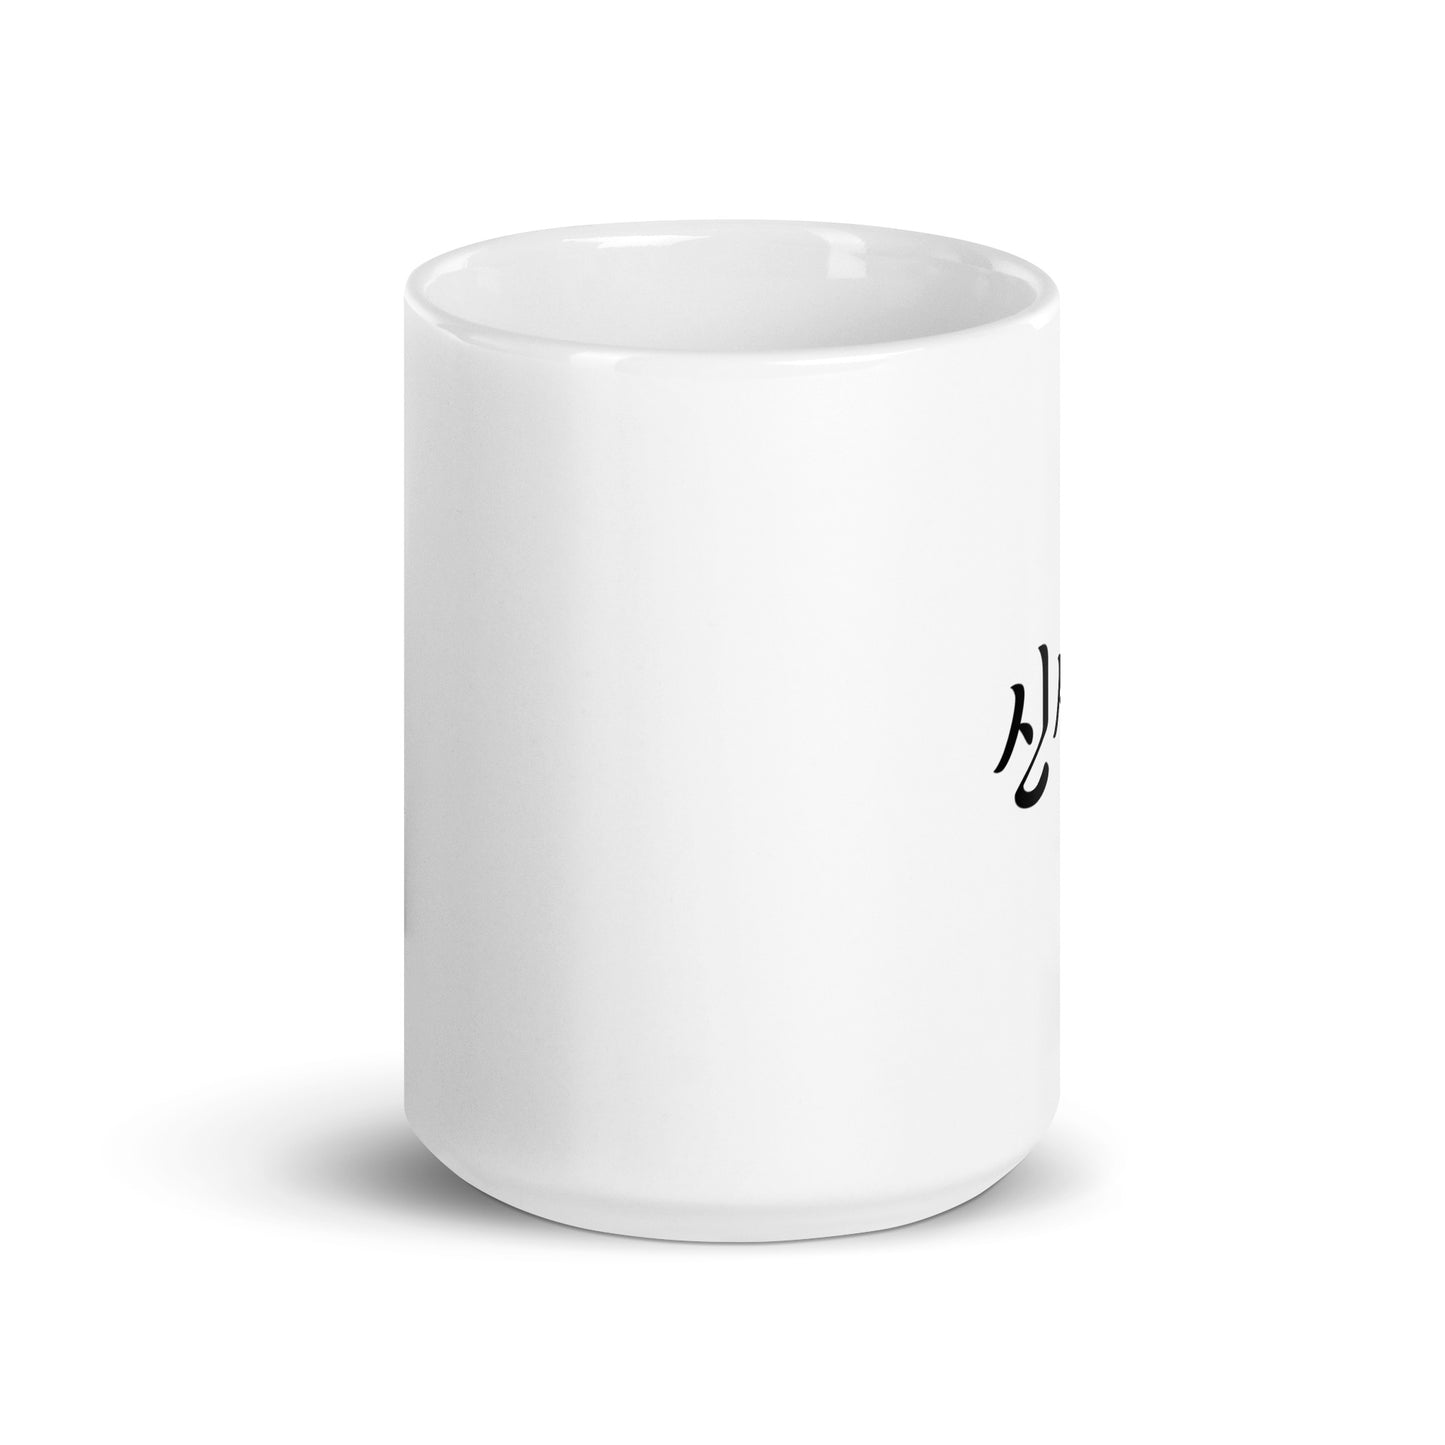 Cynthia in Hangul Custom Name Gift Ceramic Mug